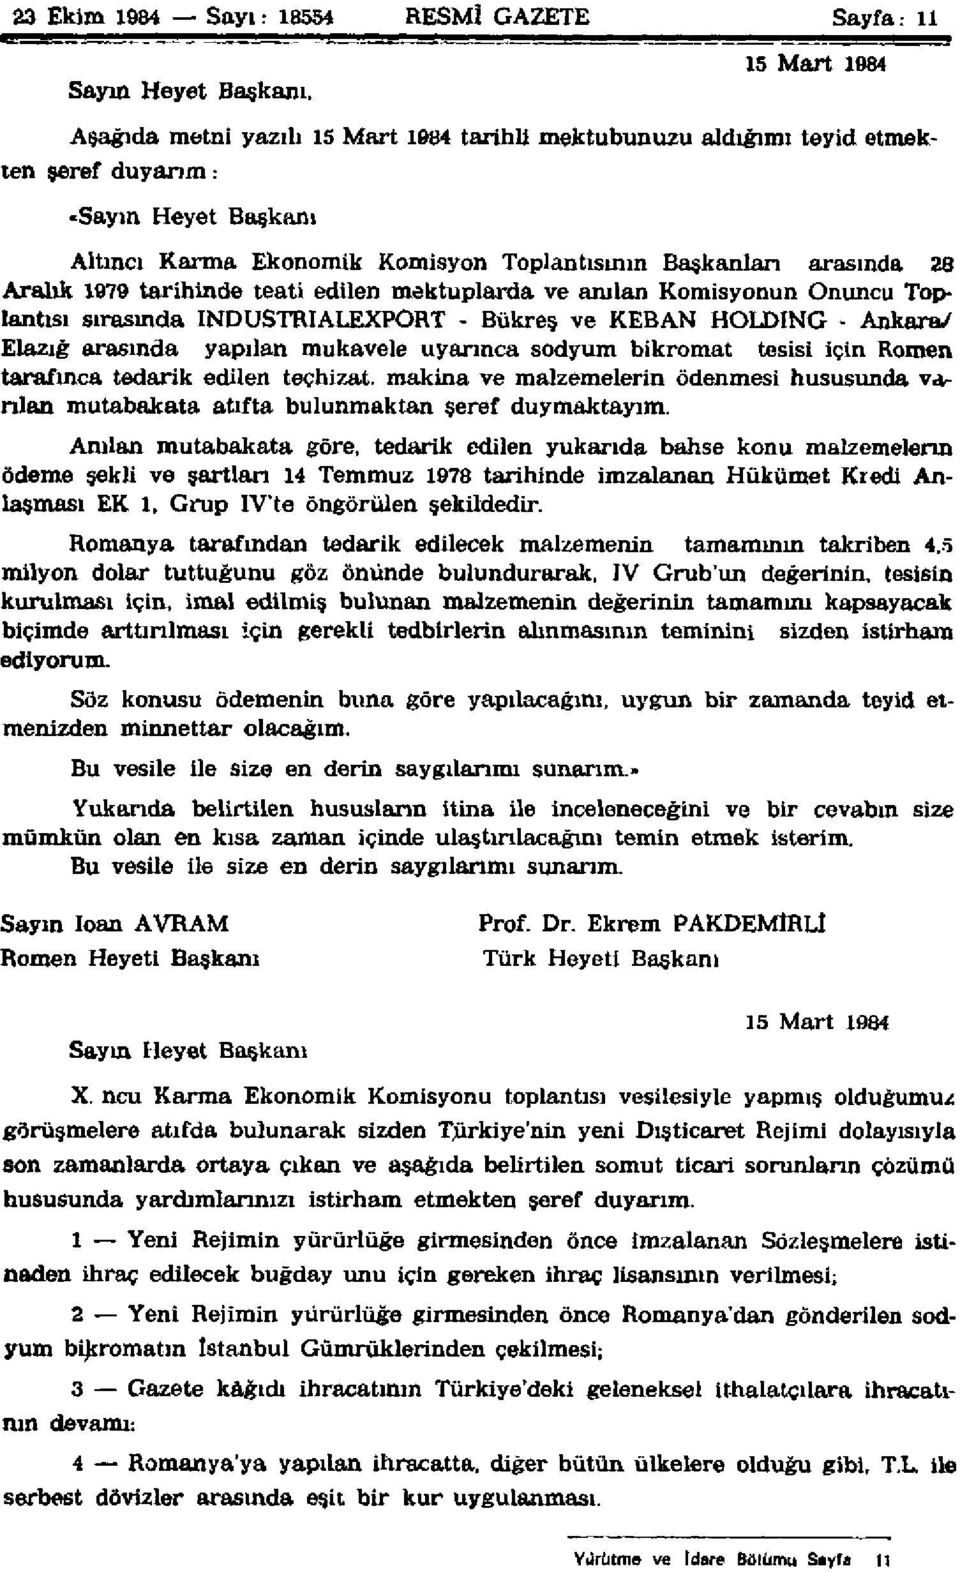 Aralık 1979 tarihinde teati edilen mektuplarda ve anılan Komisyonun Onuncu Toplantısı sırasında INDUSTRIALEXPORT - Bükreş ve KEBAN HOLDİNG - Ankara/ Elazığ arasında yapılan mukavele uyarınca sodyum